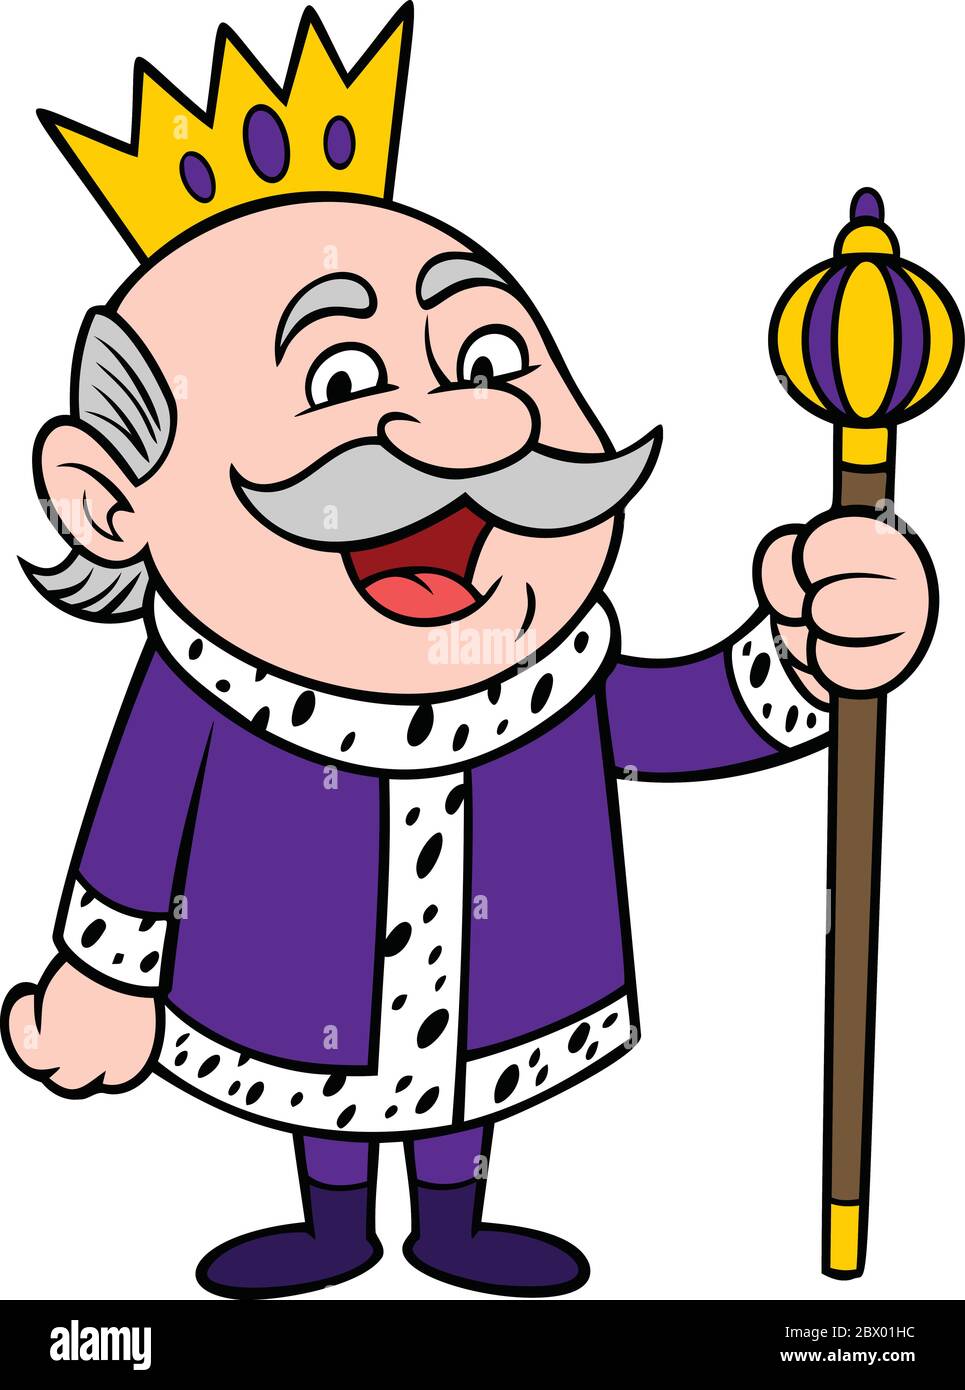 King Happy- UN dessin animé Illustration d'un roi heureux. Illustration de Vecteur